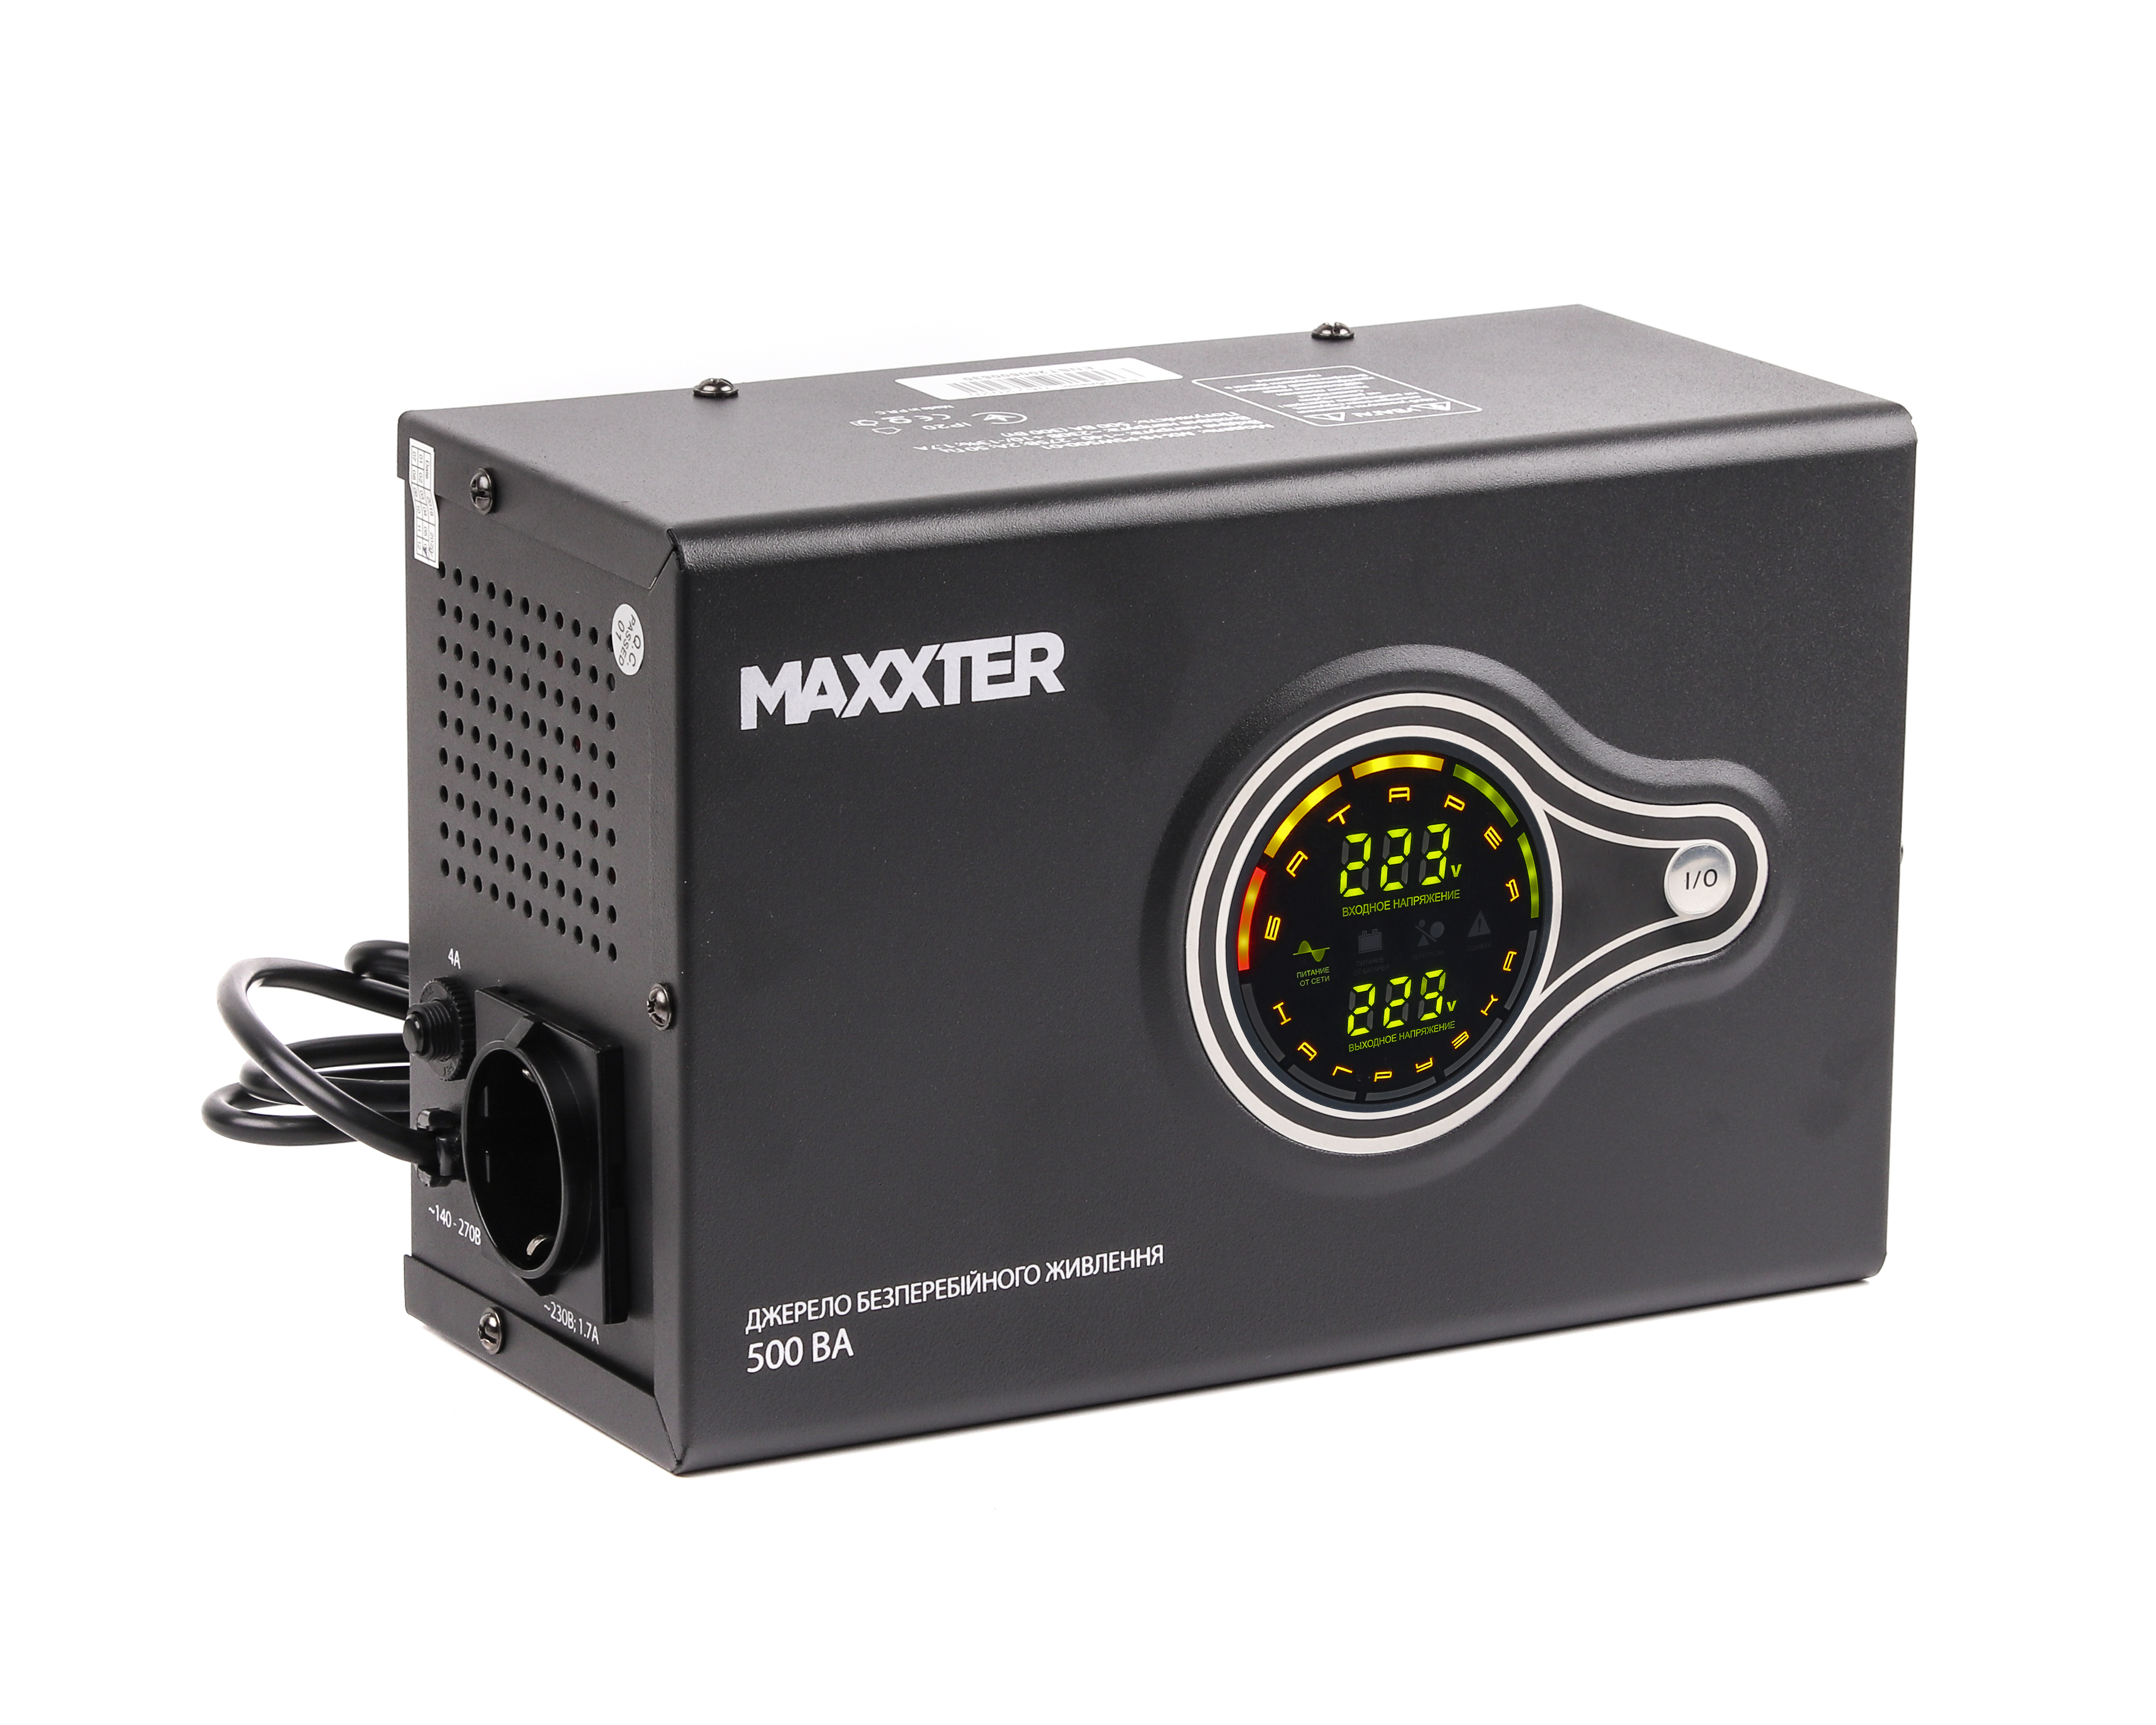 Характеристики источник бесперебойного питания Maxxter MX-HI-PSW500-01